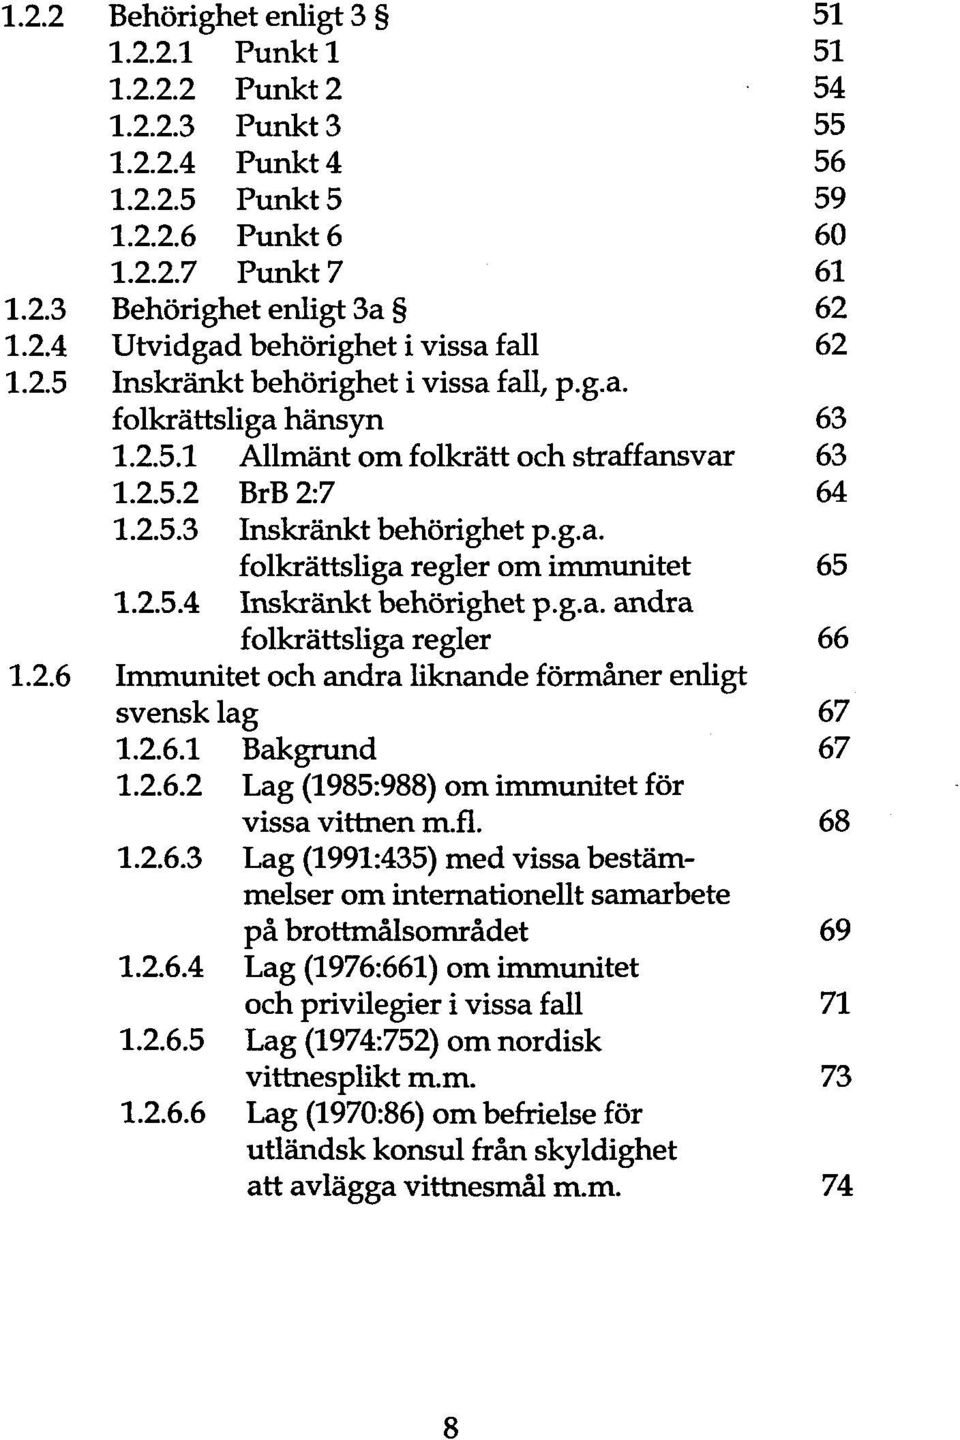 2.5.4 Inskränkt behörighet p.g.a. andra folkrättsliga regier 66 1.2.6 Immunitet och andra liknande förmäner enligt svensk lag 67 1.2.6.1 Bakgrund 67 1.2.6.2 Lag (1985:988) om immunitet för vissa vittnen rn.